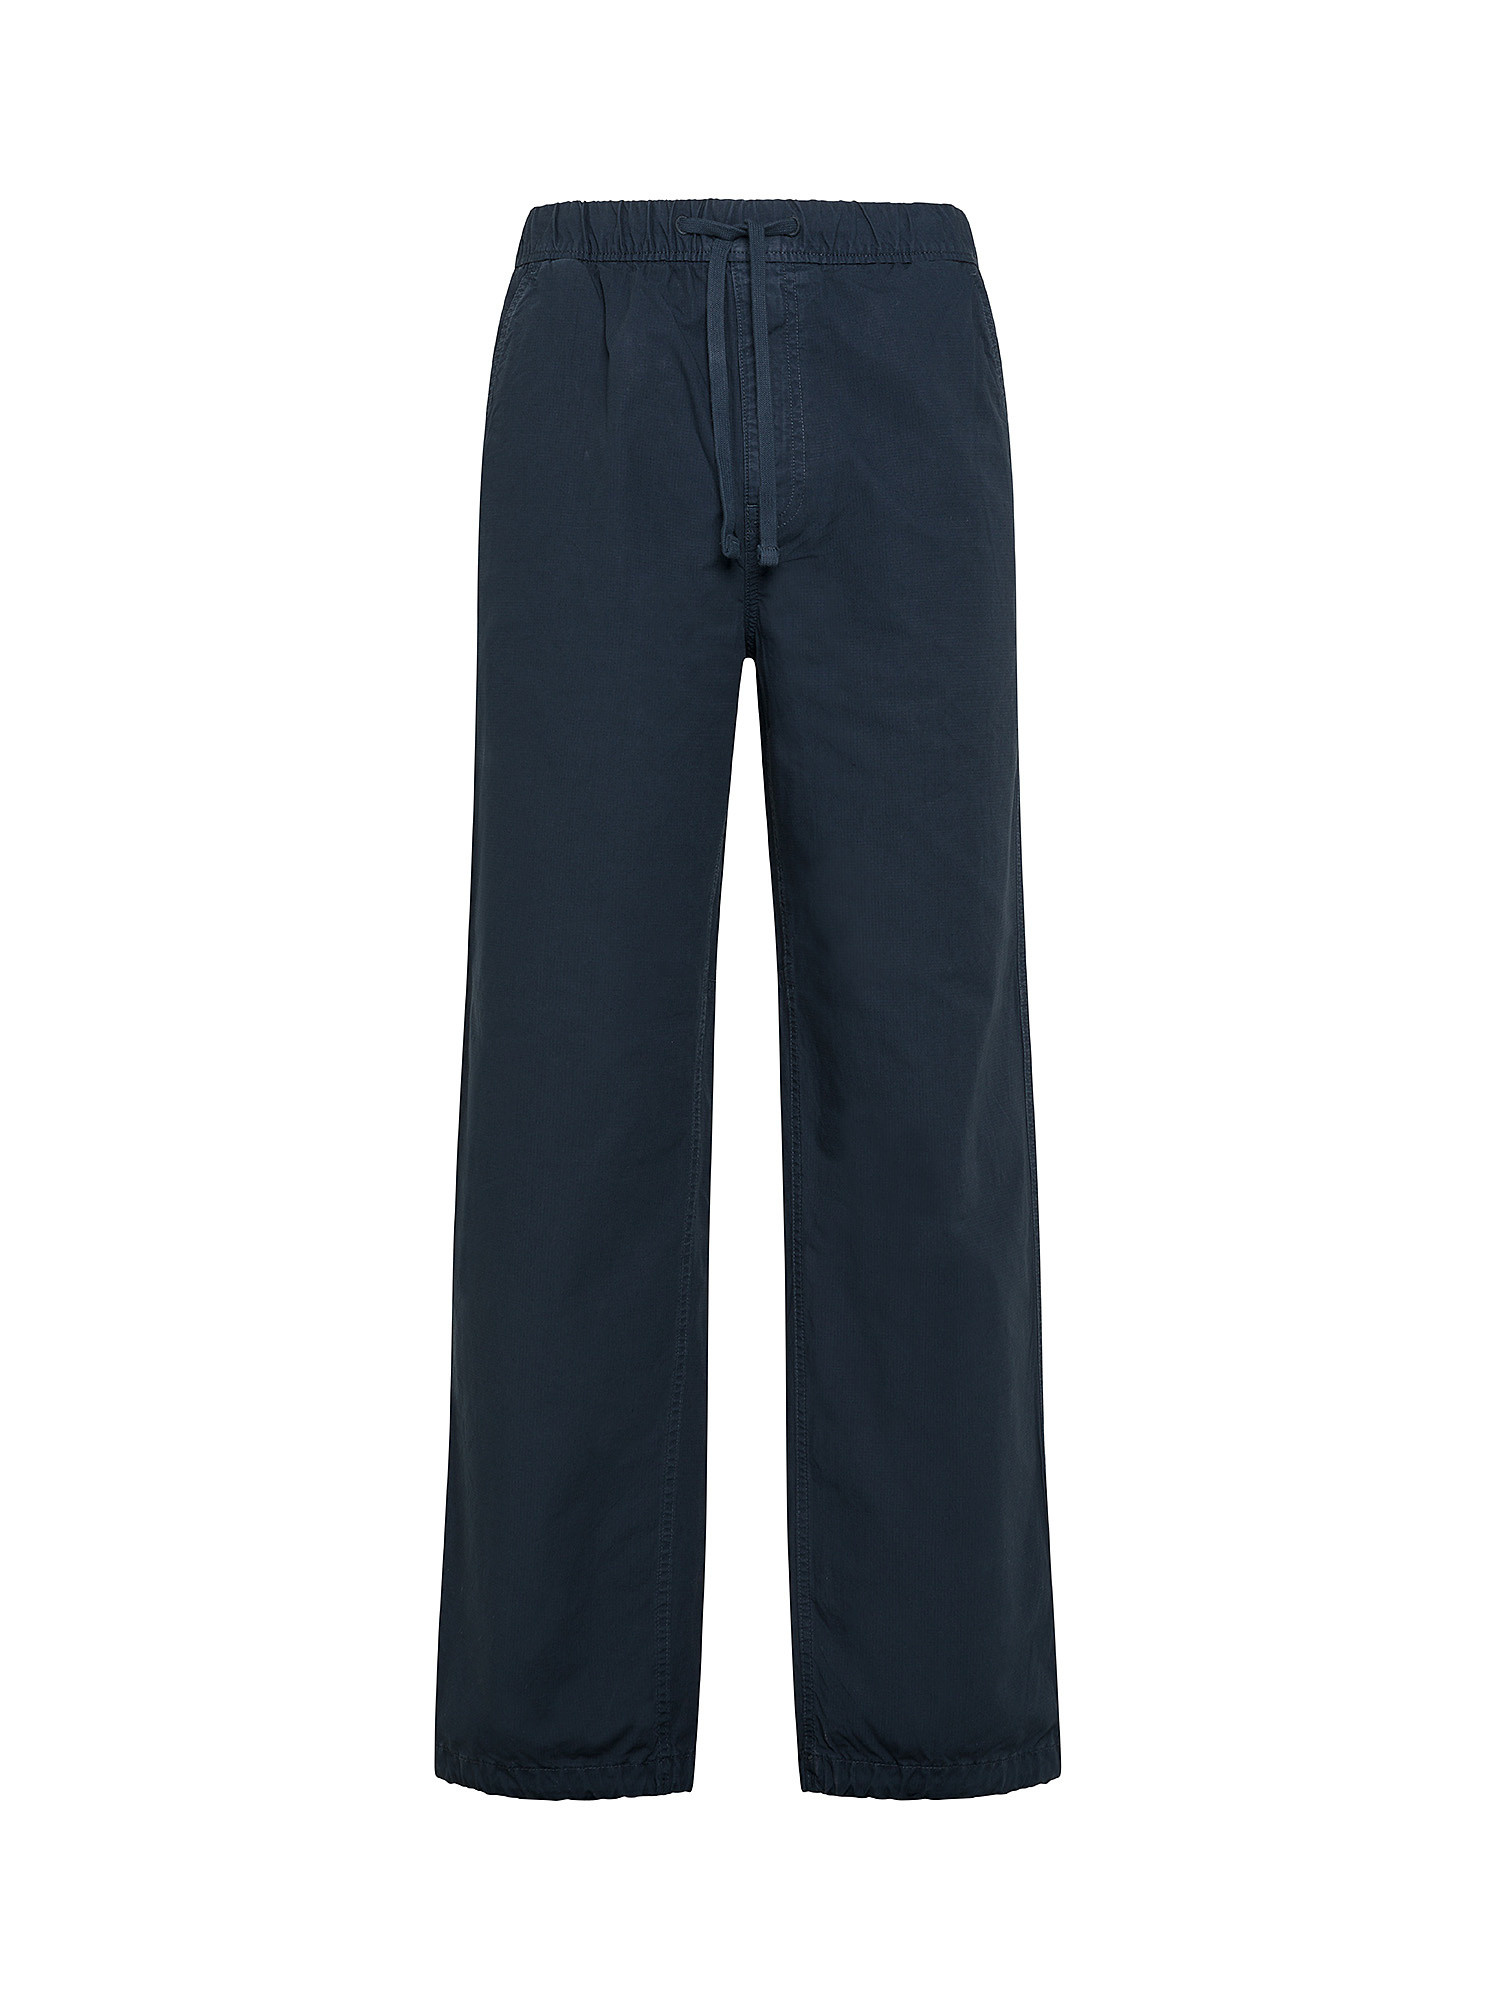 Superdry - Pantaloni in tela di cotone, Blu, large image number 0